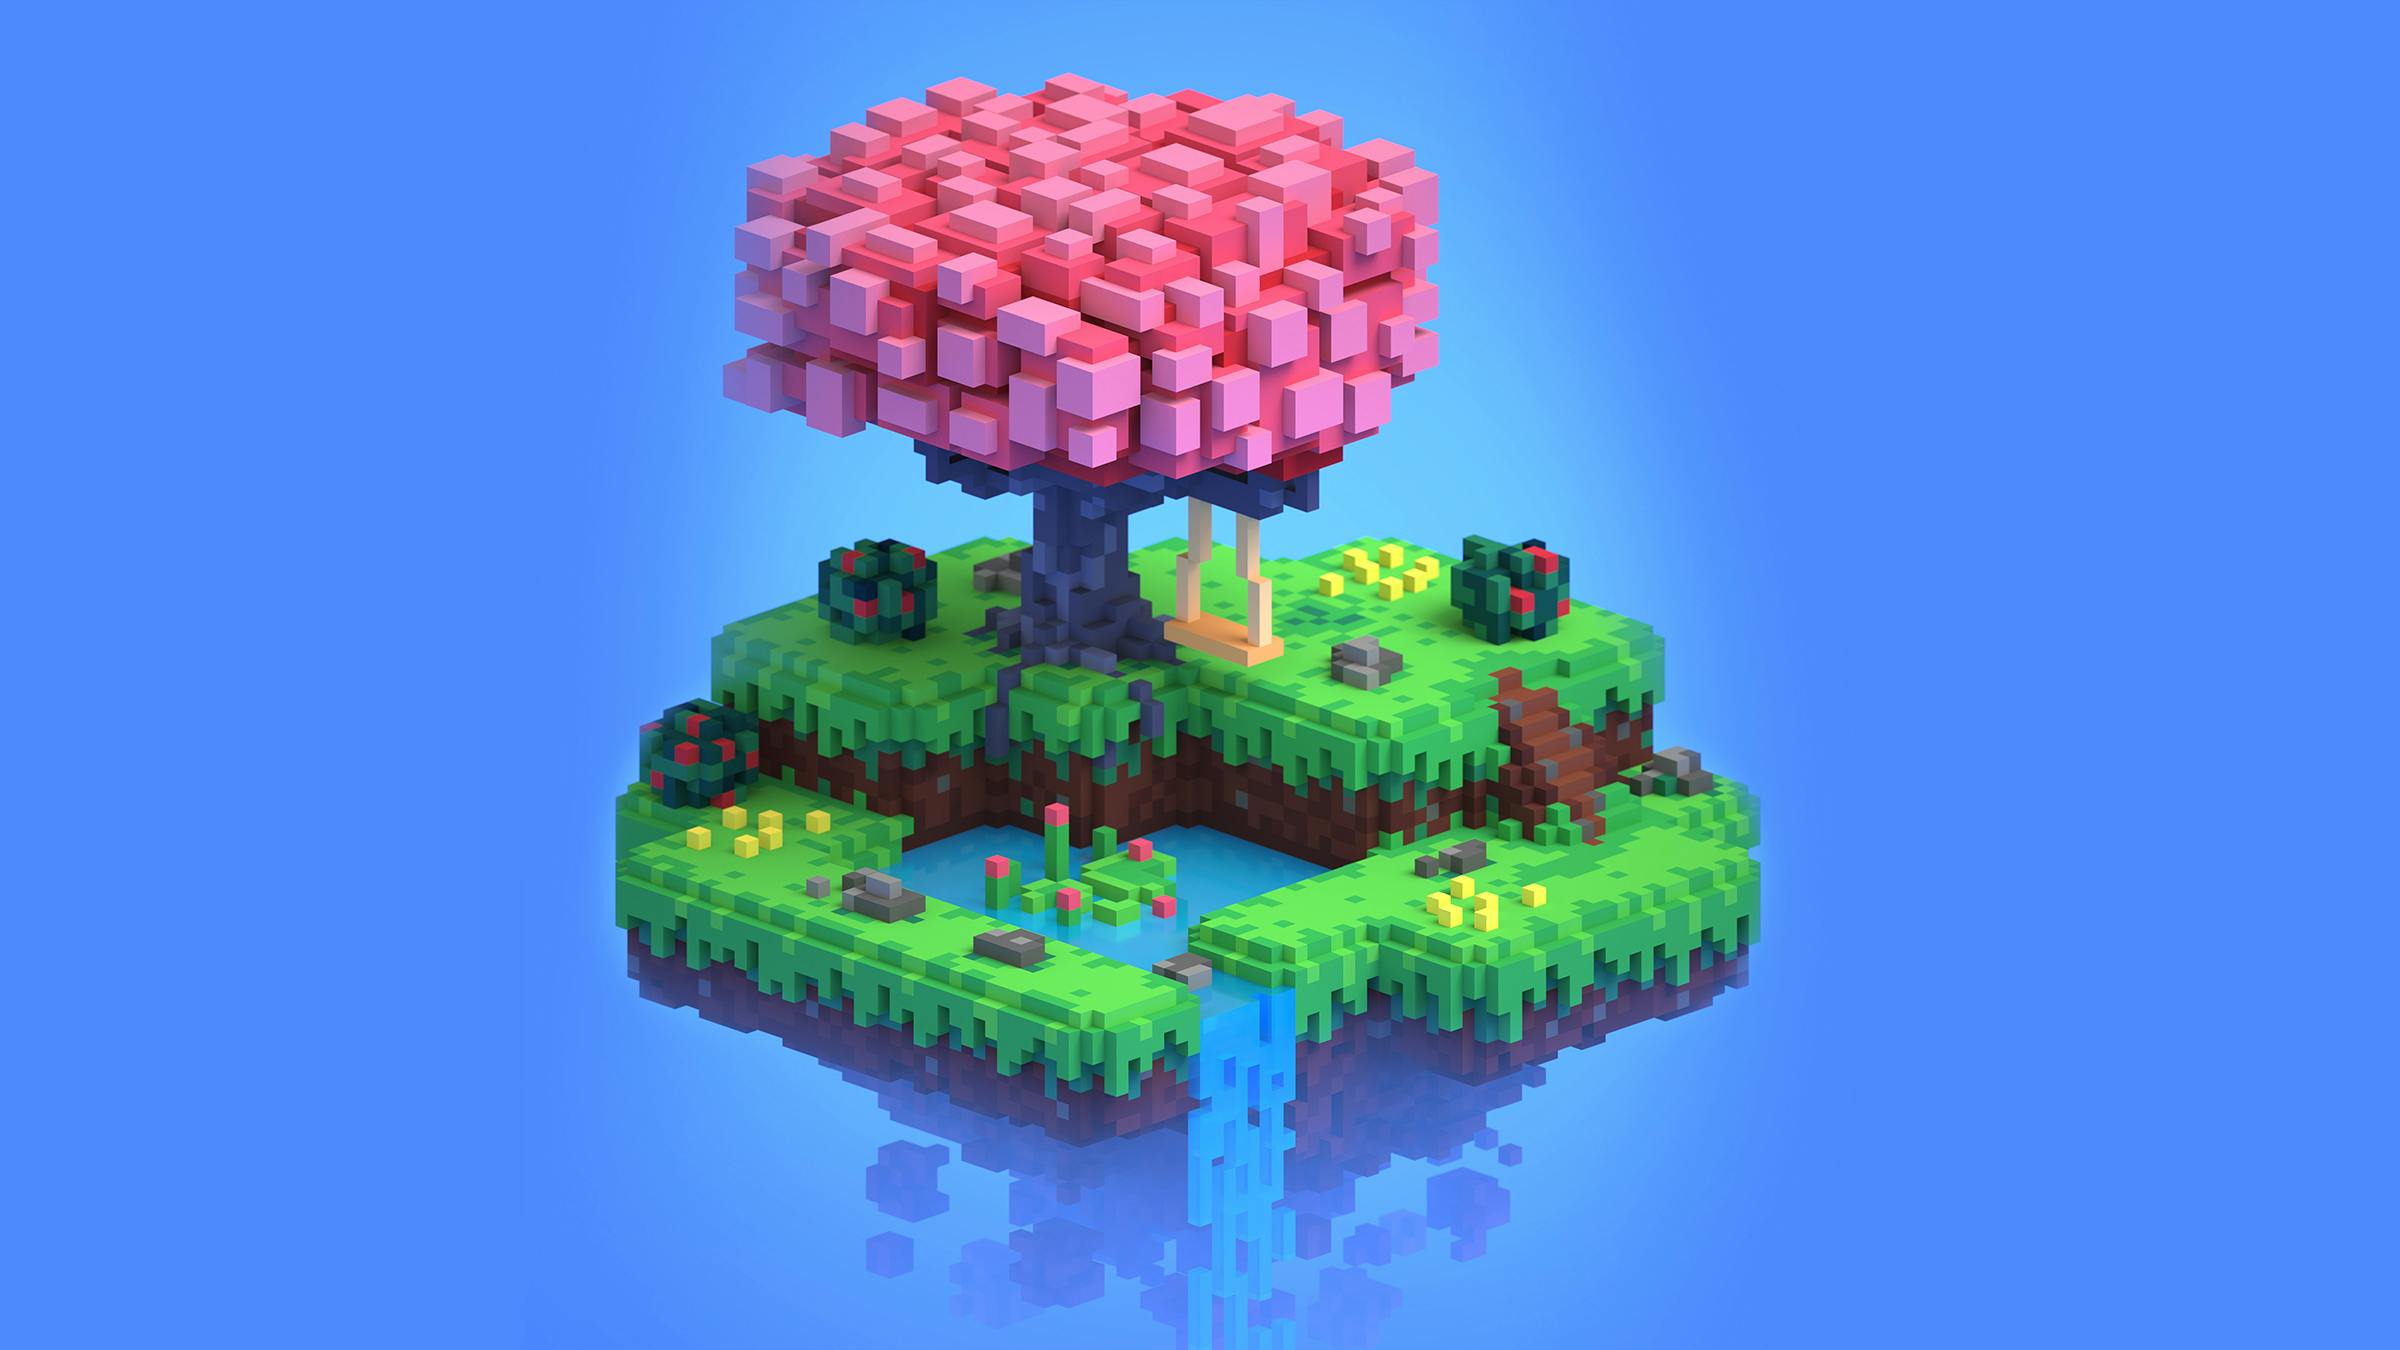 Auf einer kleinen Insel steht ein Baum in Minecraft-Optik. Er trägt rosafarbene Blüten.